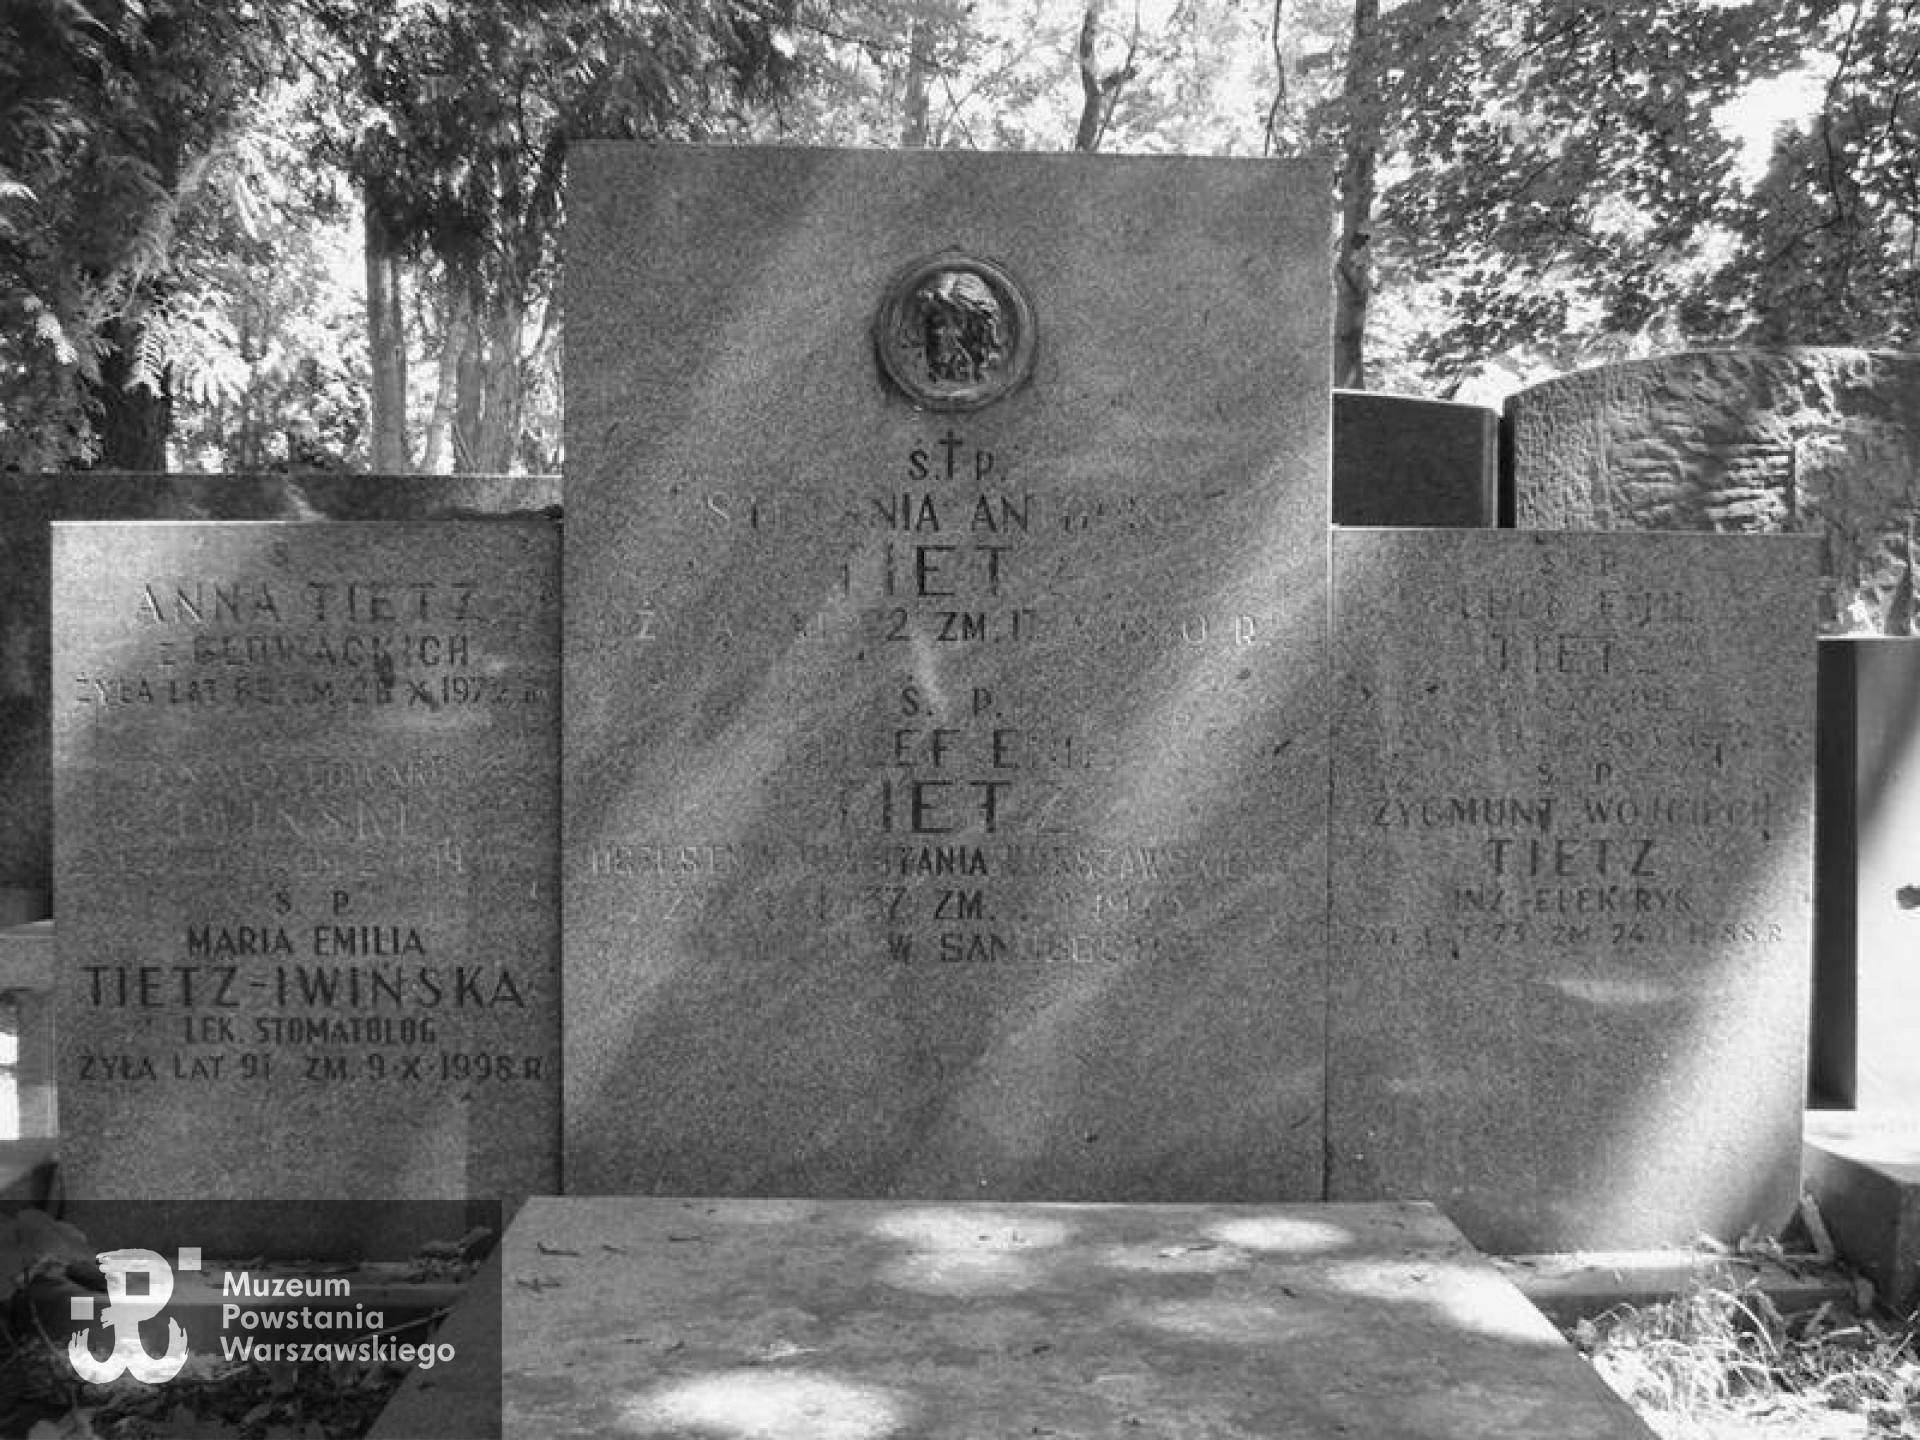 Cmentarz Powązkowski w Warszawie (Stare Powązki) - Tietzowie - grób rodzinny, kwatera 200, rząd 6, miejsce 15-16. Fot. udostępniła p. Beata Trzcińska